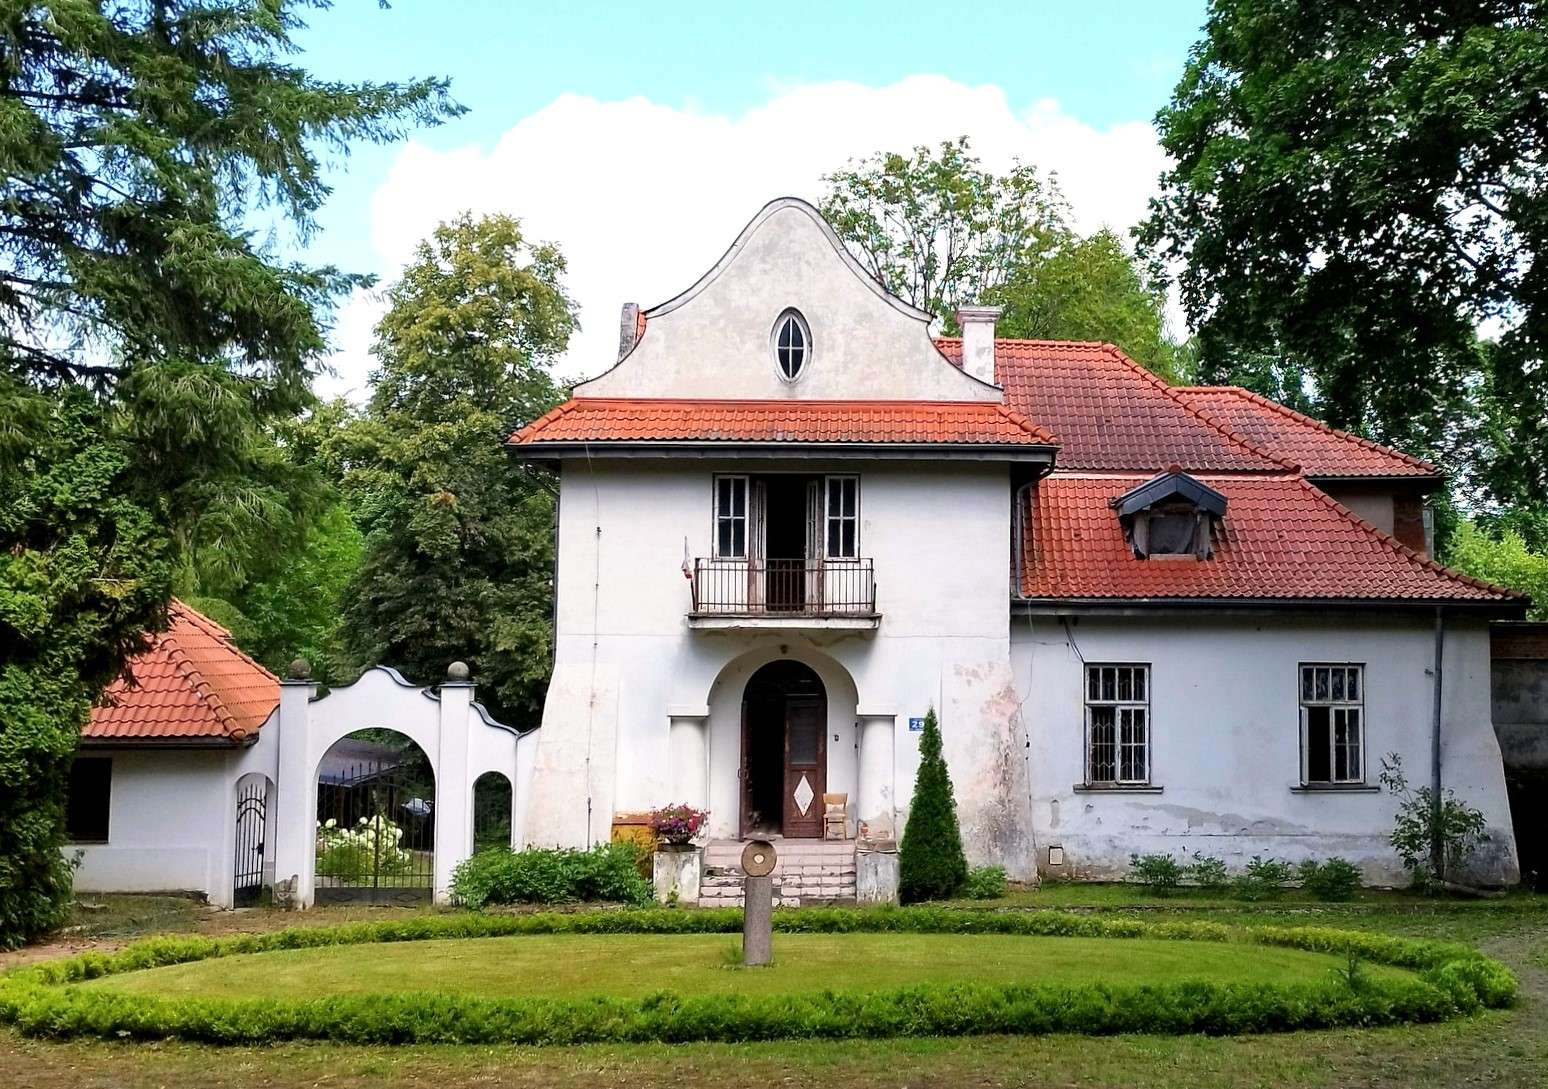 Историческая вилла в Наленчуве (Польша) пазл онлайн